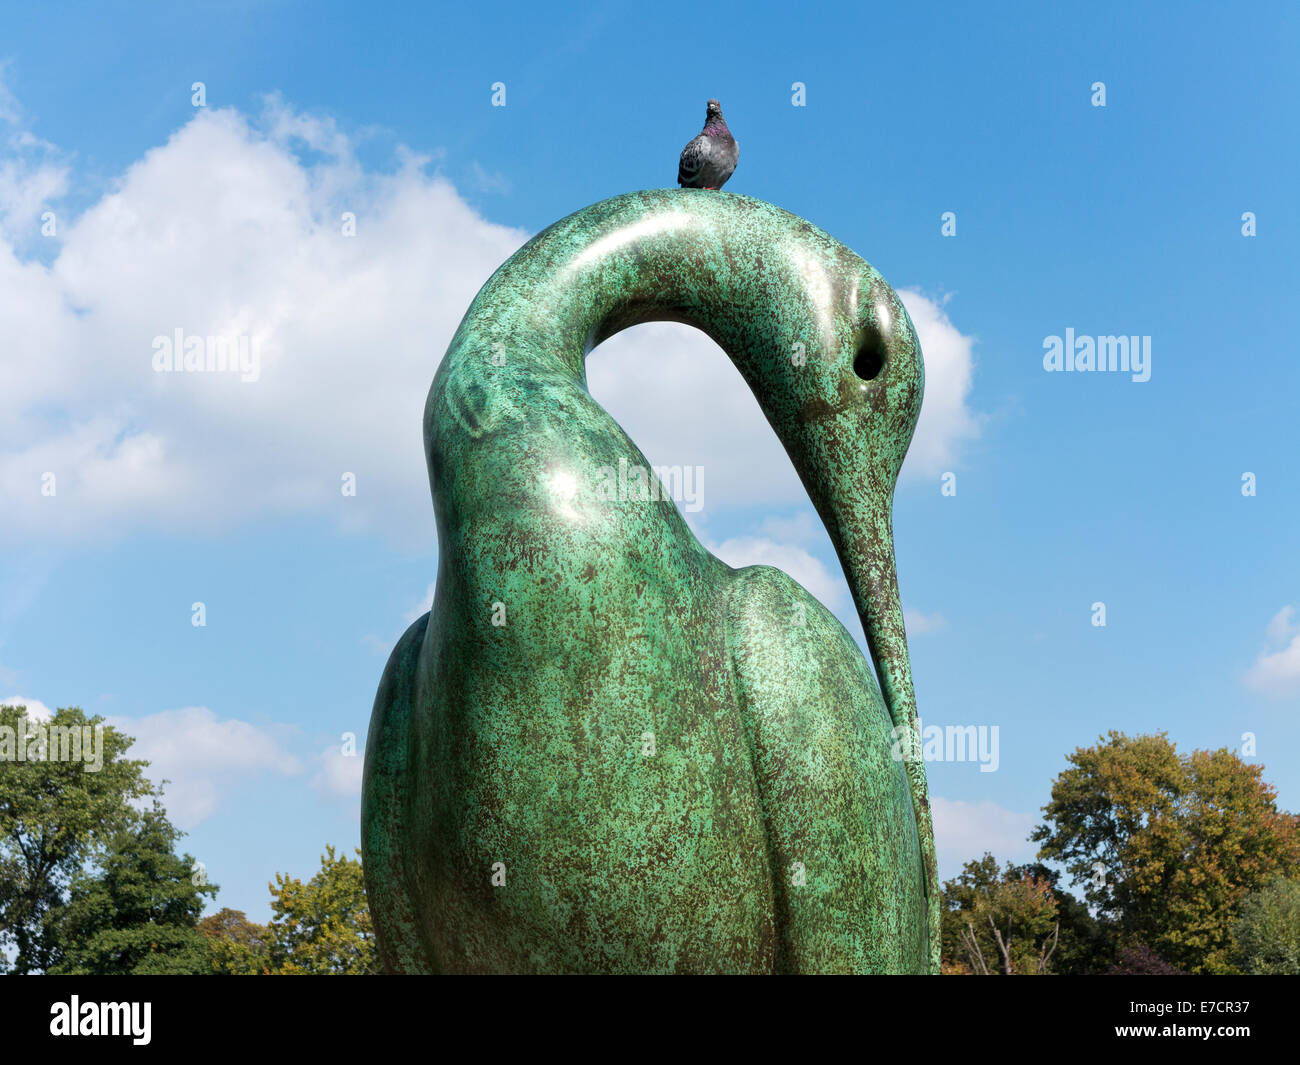 La sculpture 'Isis' par Simon Gudgeon dans Hyde Park Londres Angleterre contre un ciel bleu, les nuages et un pigeon sur le cou Banque D'Images